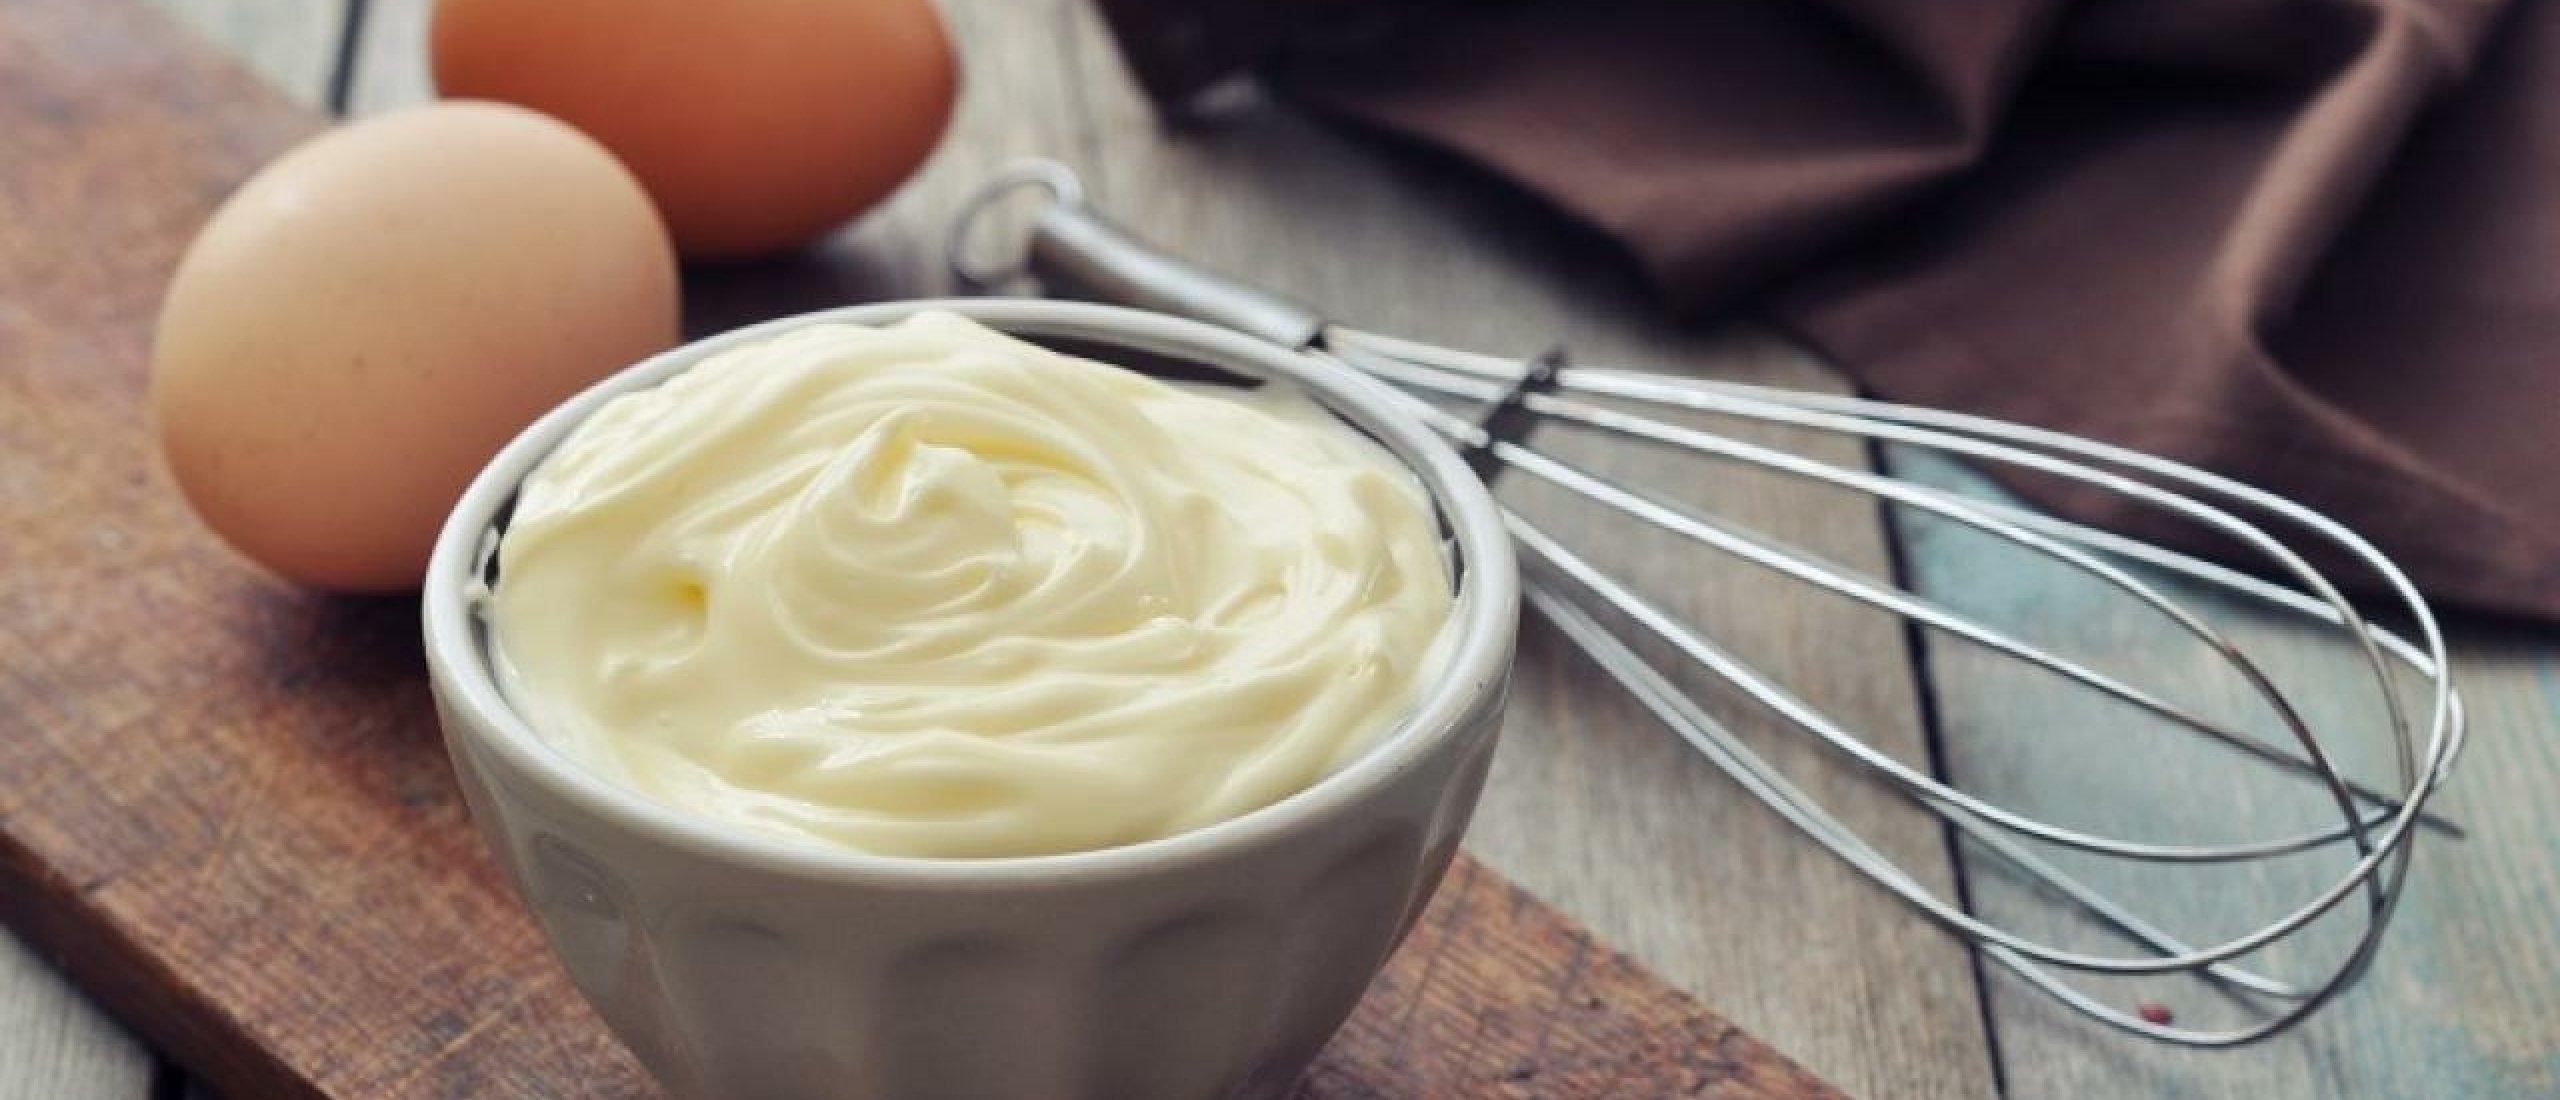 Recept: Hoe maak je zelf mayonaise?